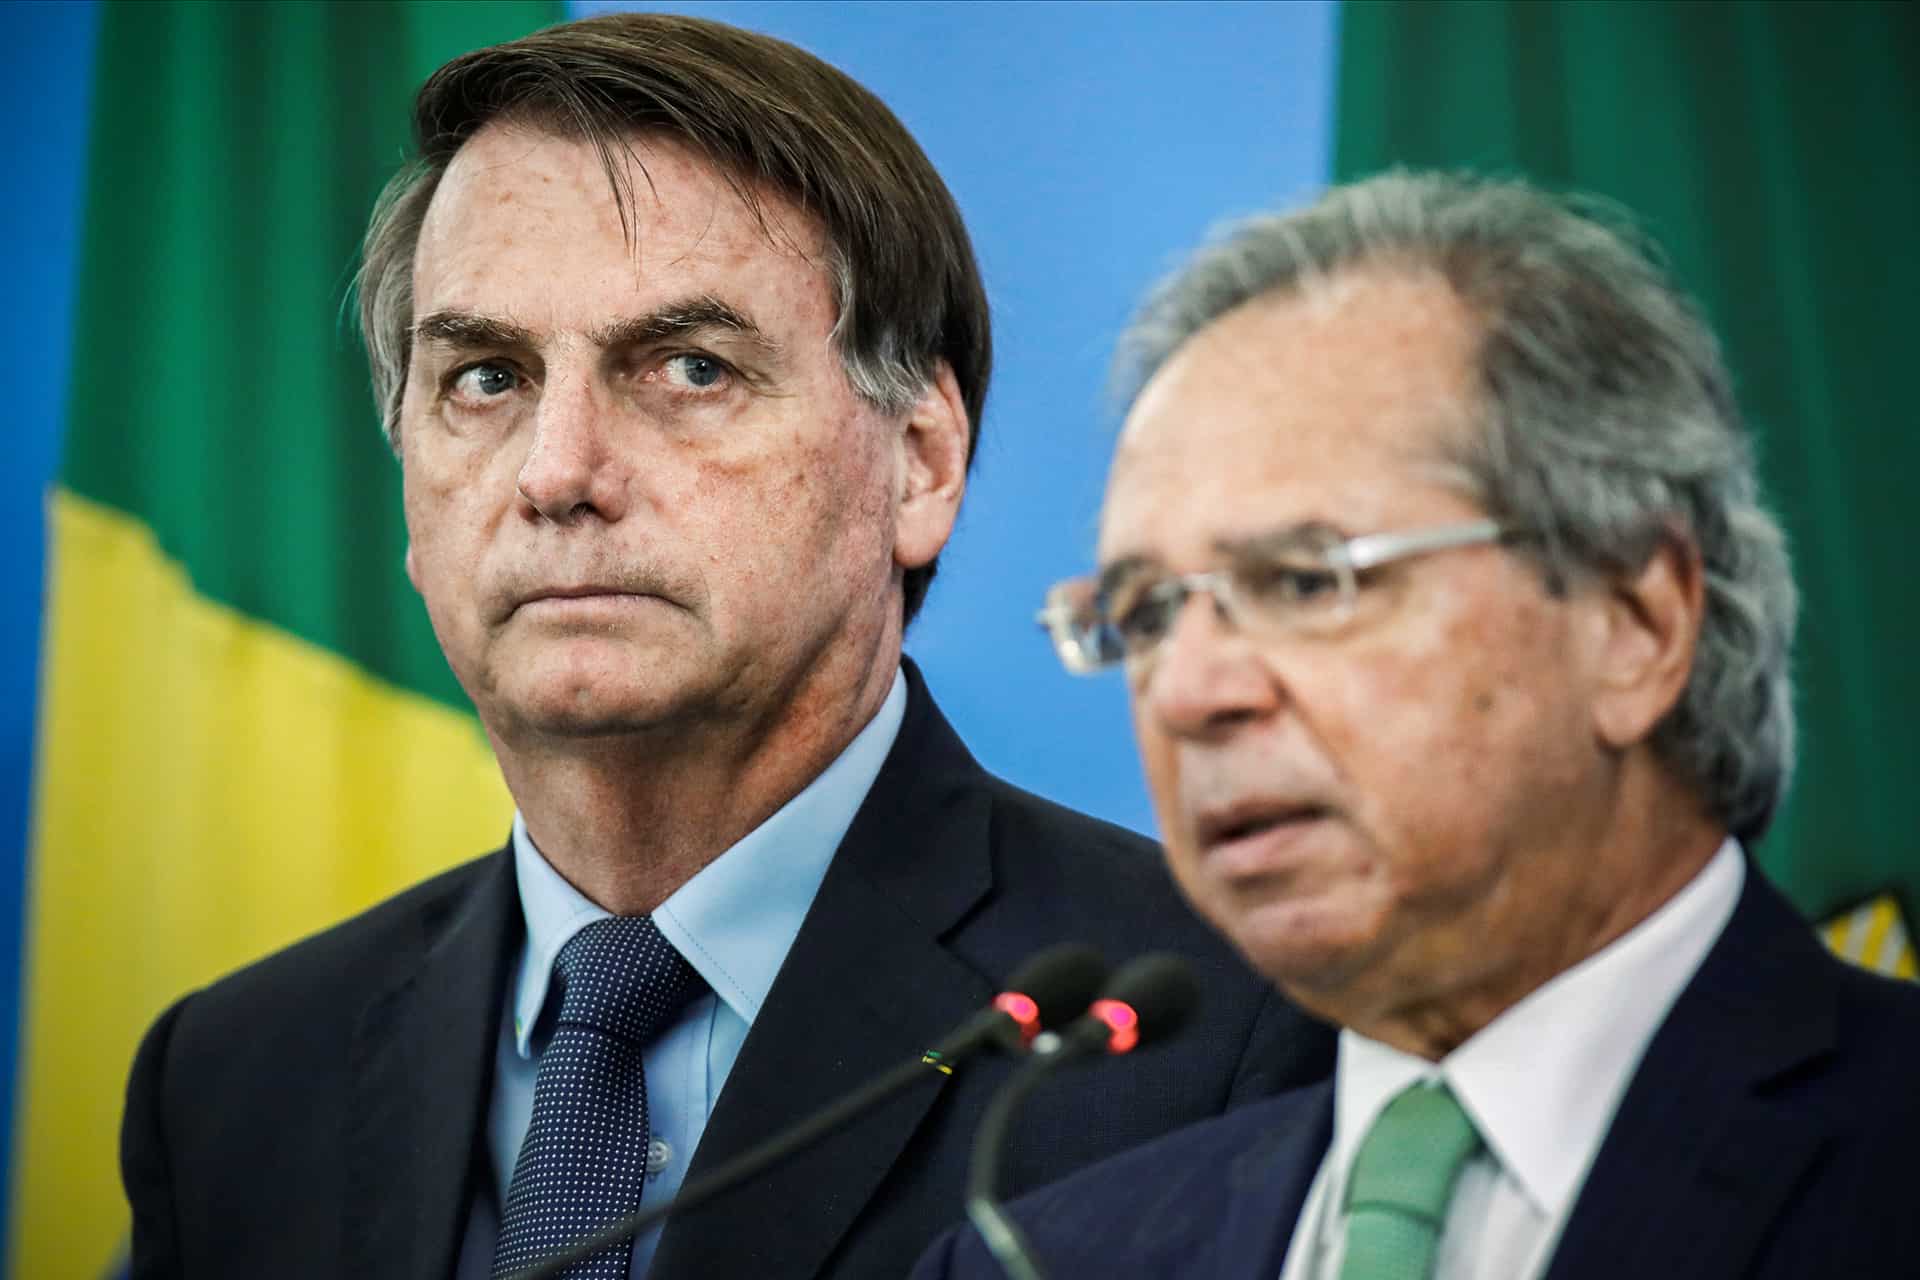 Auxílio emergencial: Bolsonaro, Guedes e Maia confirmam posicionamento sobre prorrogação do benefício